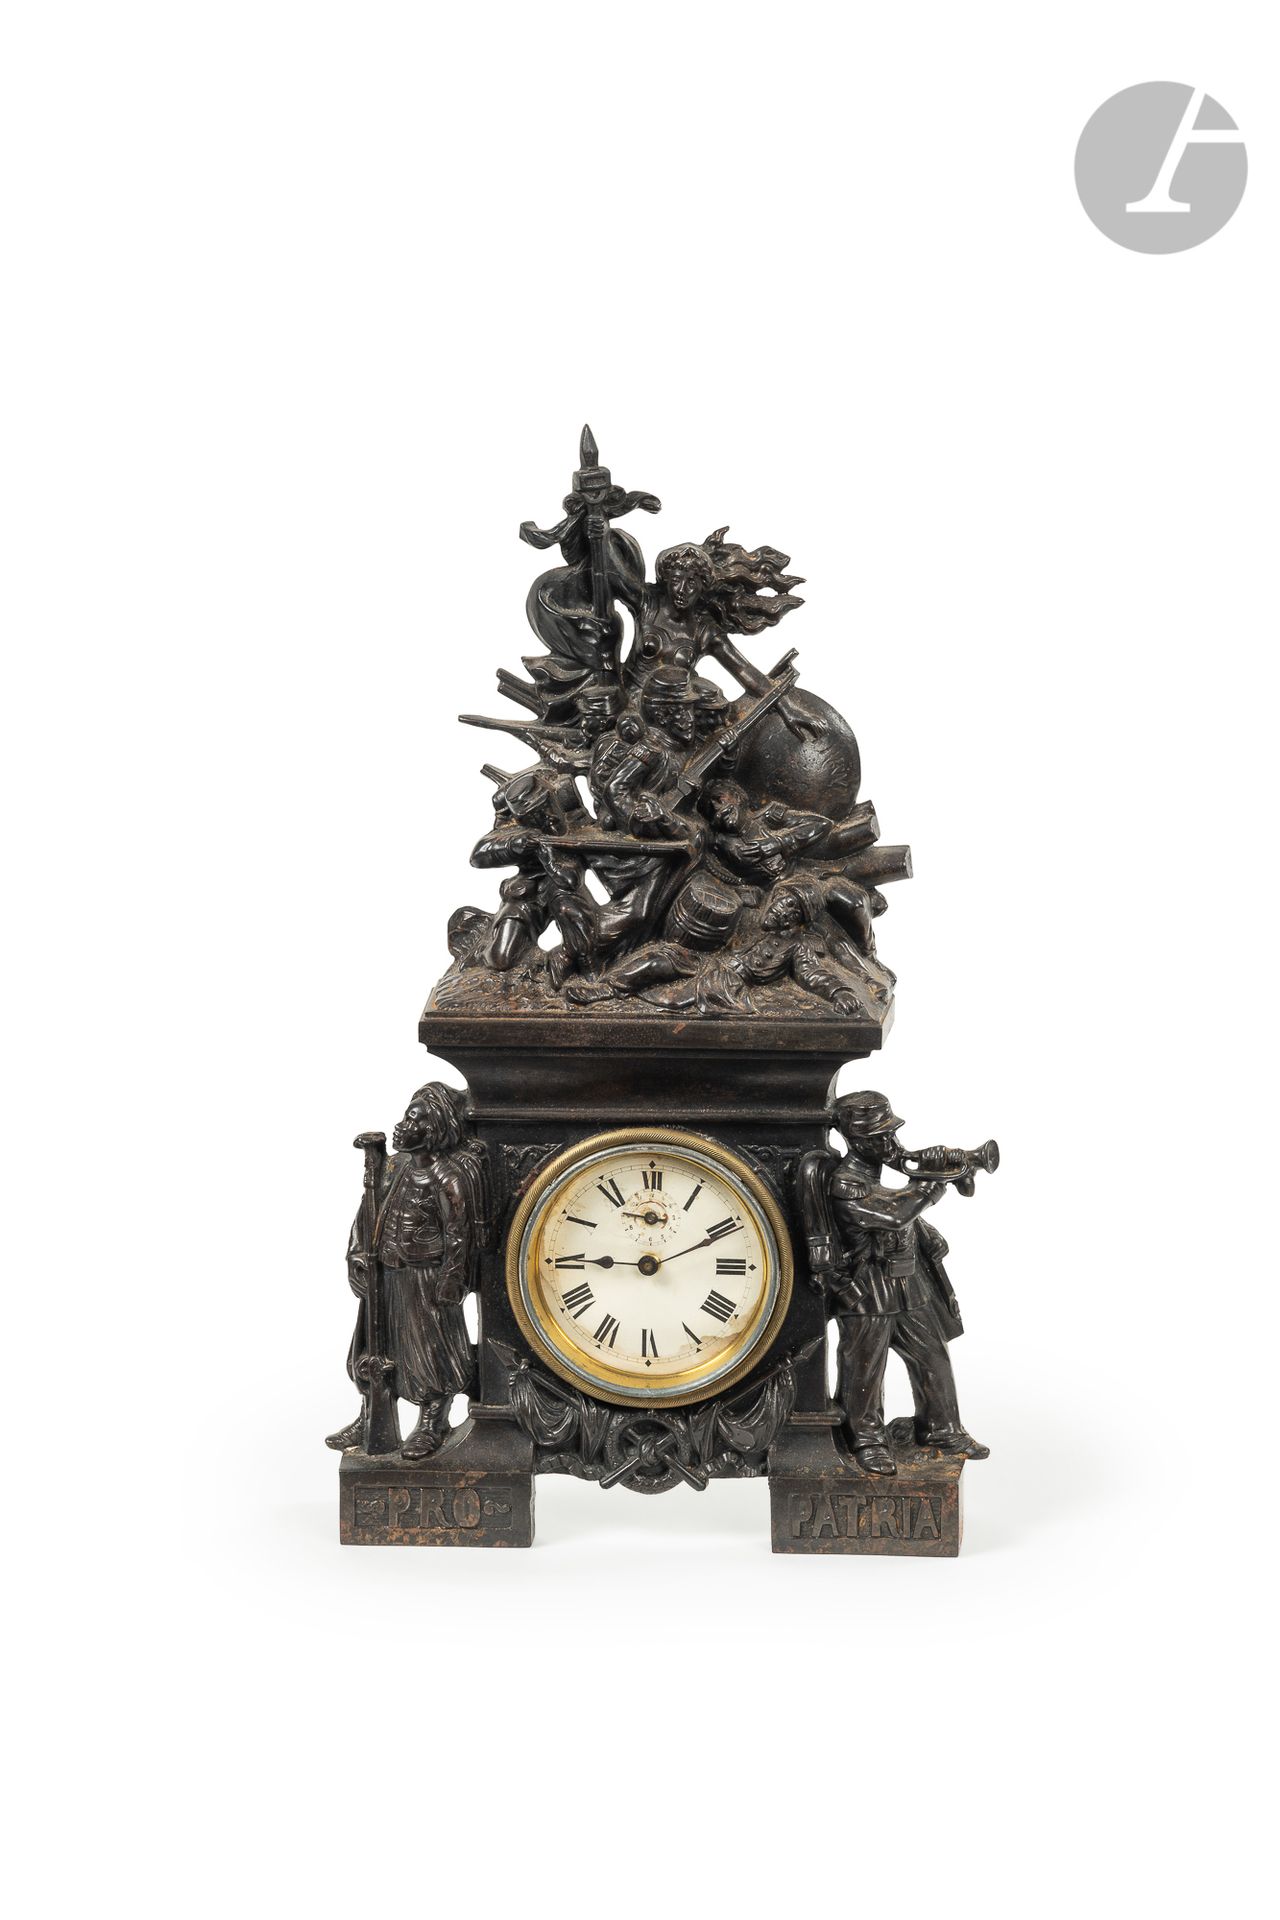 Null "PRO PATRIA". 1870 " 
Gusseiserne Uhr mit Patina und dekoriert mit einer Al&hellip;